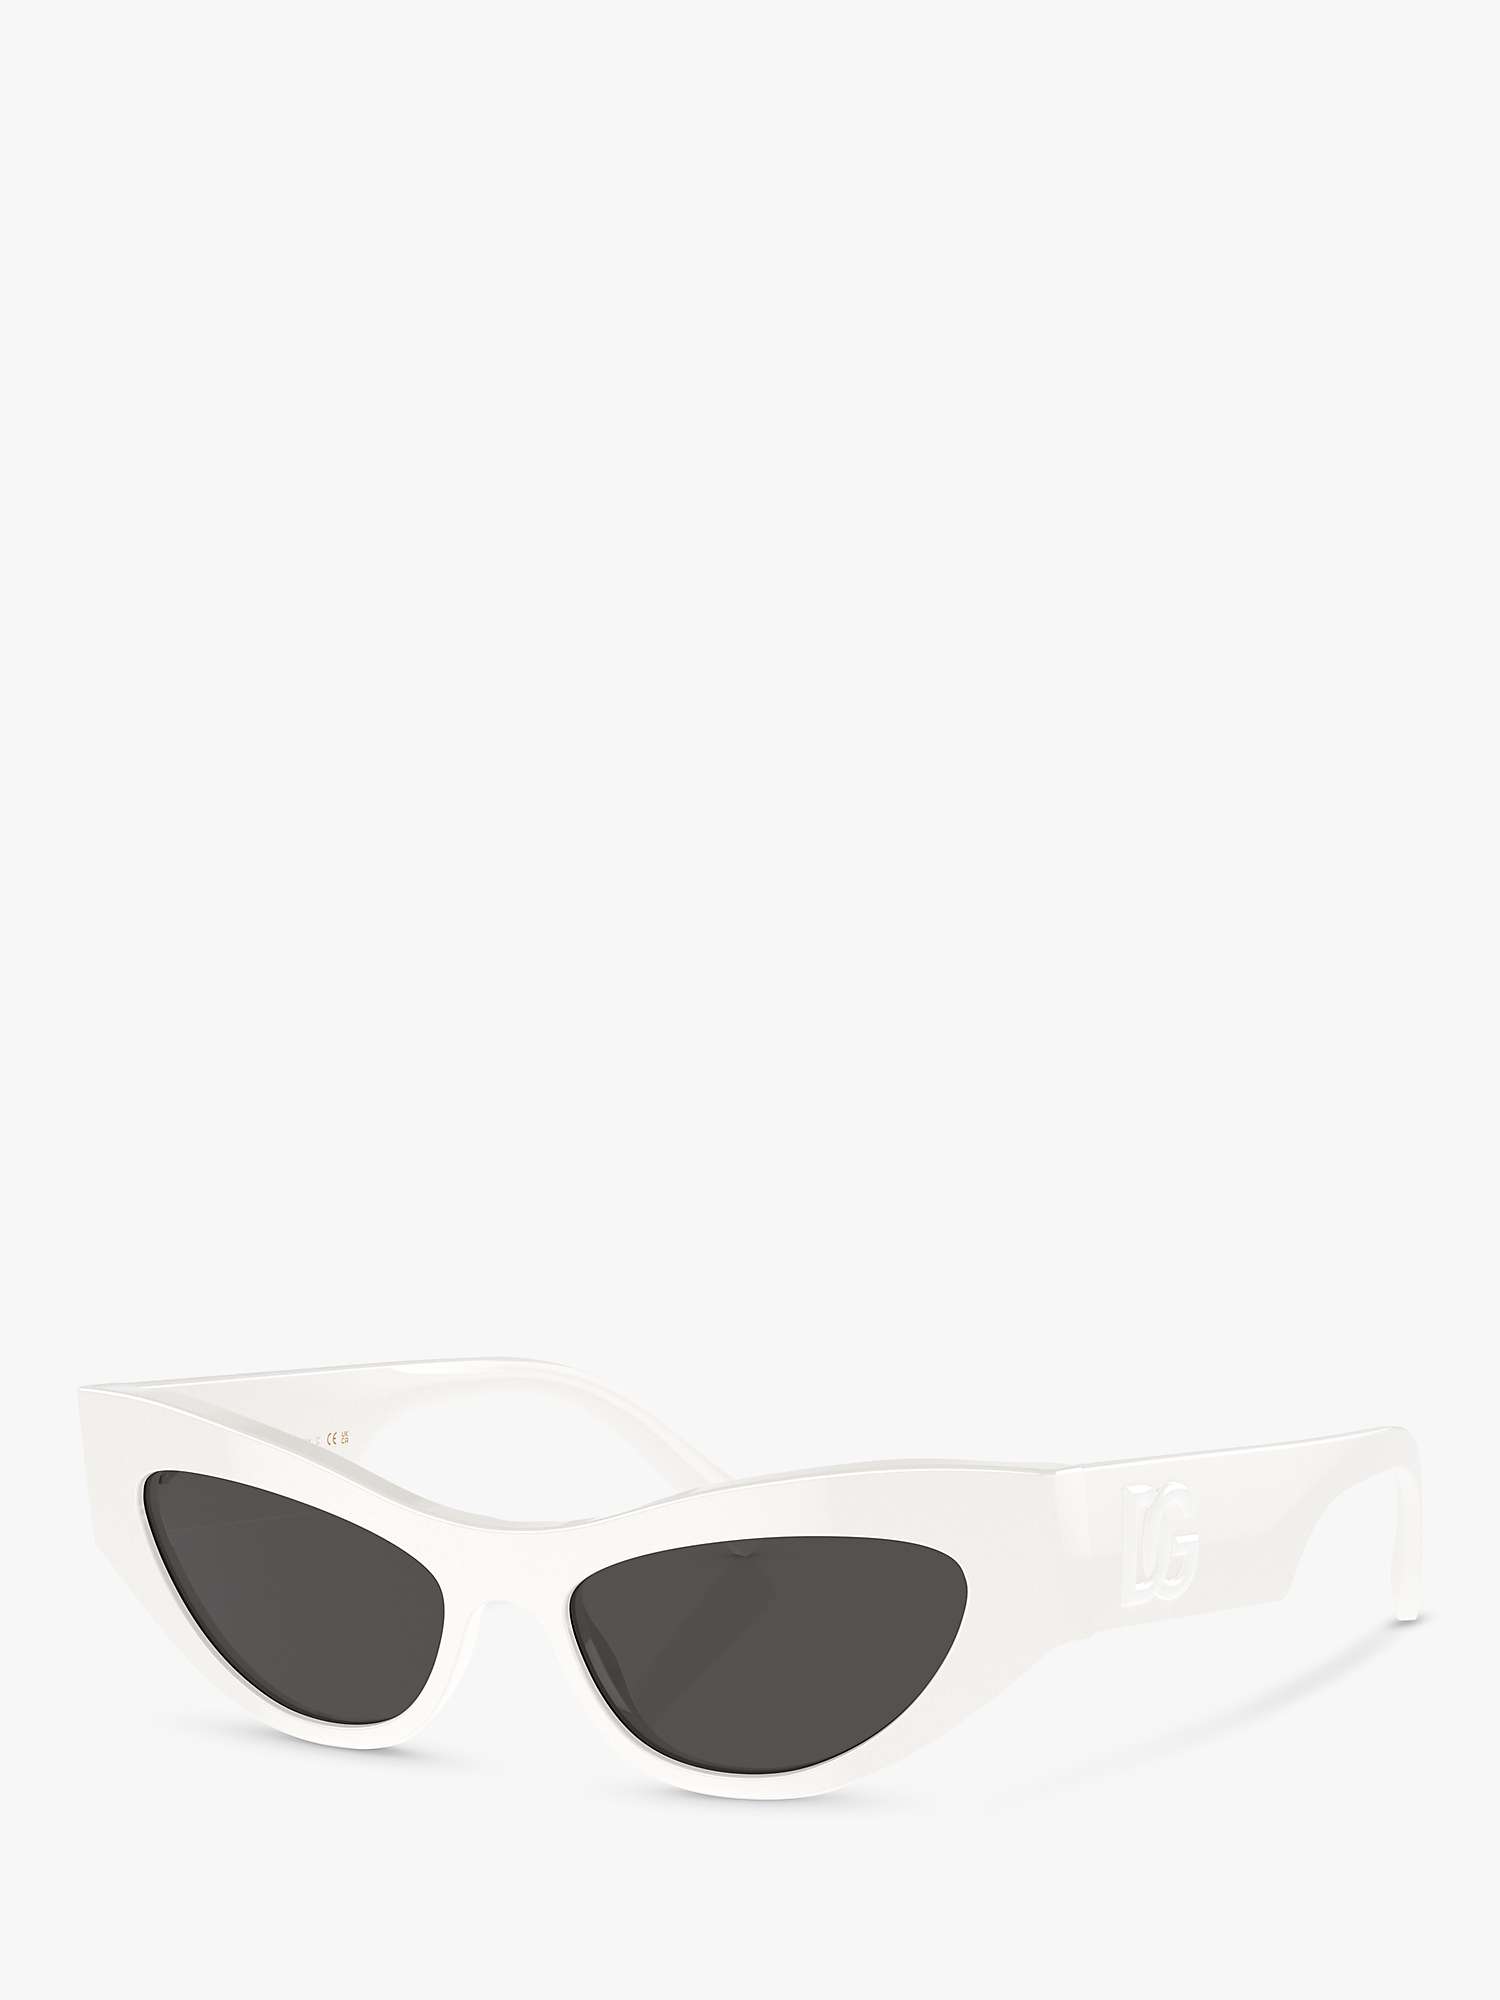 Buy Dolce & Gabbana DG4450 Women's Cat's Eye Sunglasses Online at johnlewis.com